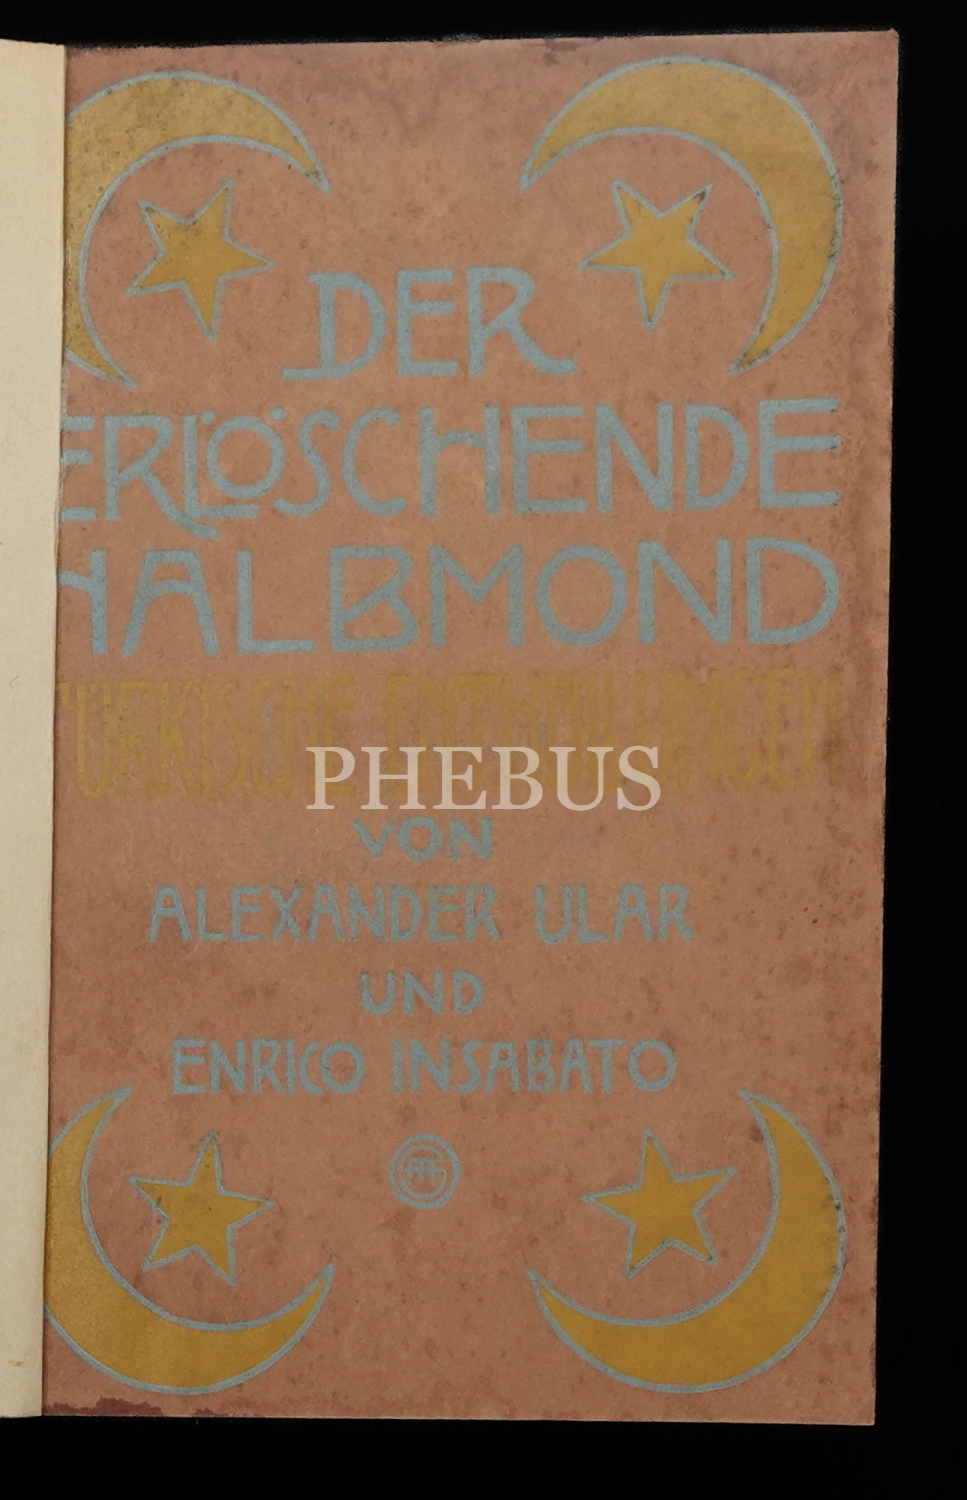 DER ERLÖSCHENDE HALBMOND (Türkische Enthüllungen), Alexander Ular ve Enrico Insabato, 1909, Rütten&Loening Frankfurt, 343 sayfa, 14x20 cm...